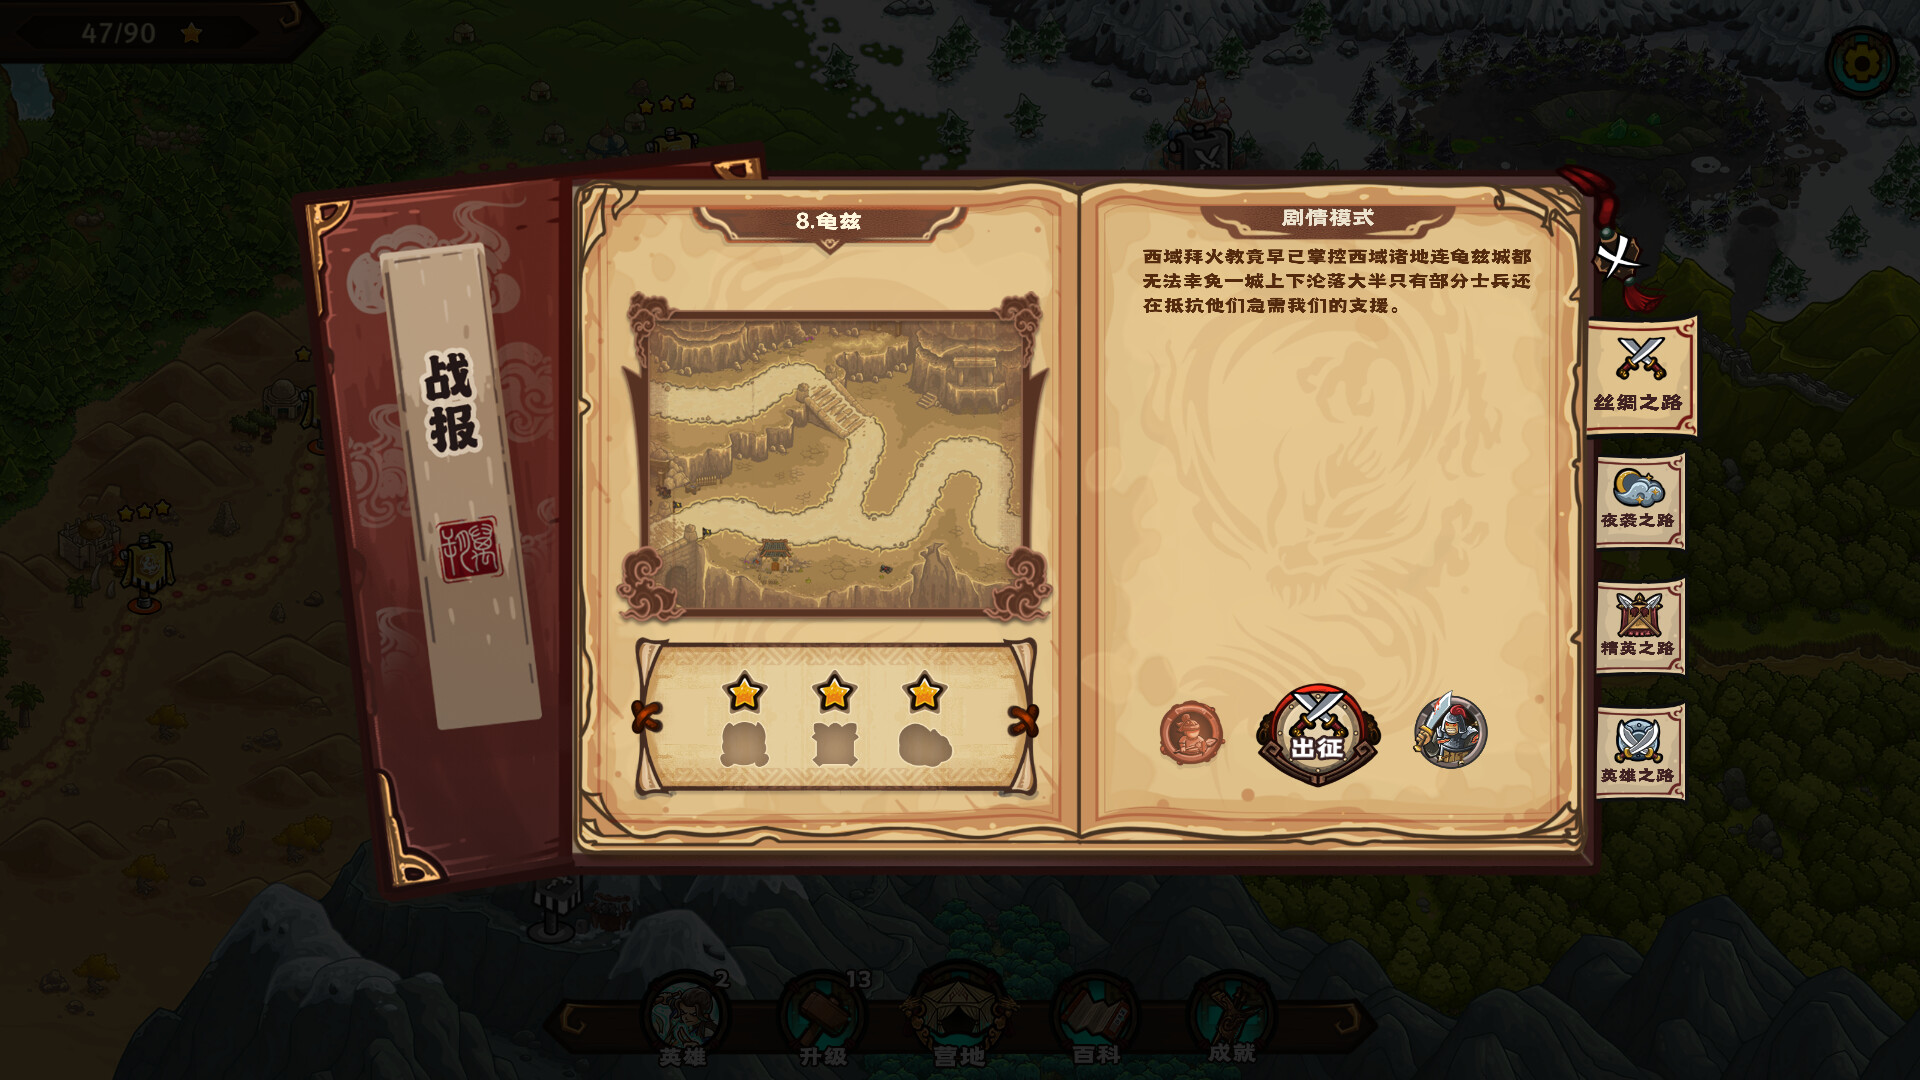 Oriental Dynasty - Silk Road defense war Steam CD Key 2.8 $